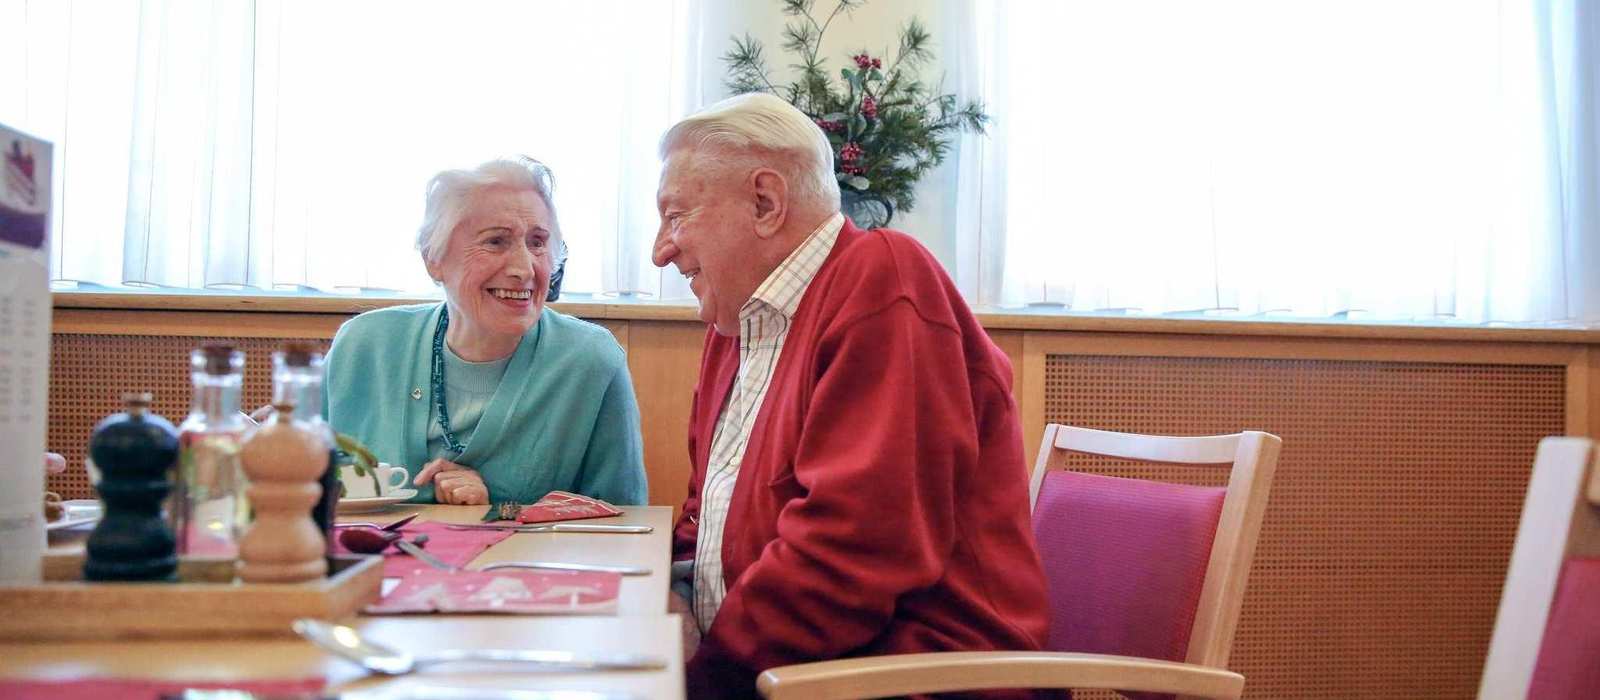 Zwei ältere Personen sitzen an einem Tisch und unterhalten sich.